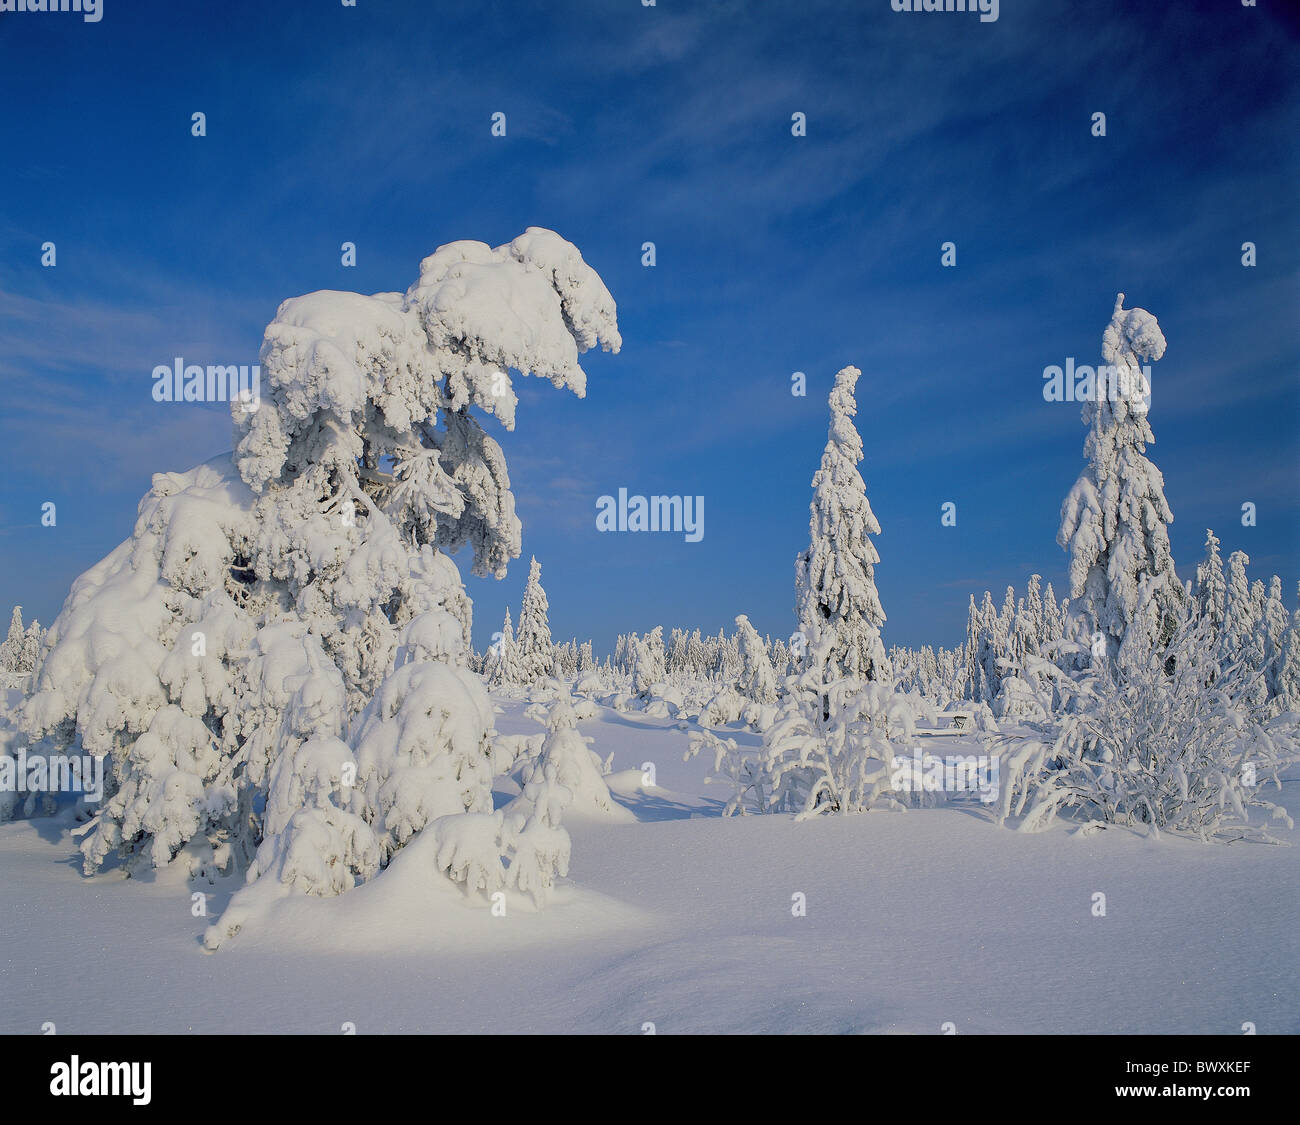 La lisière de la forêt de bois d'hiver des arbres forestiers domaine stoopedly sapin la neige recouvre Banque D'Images